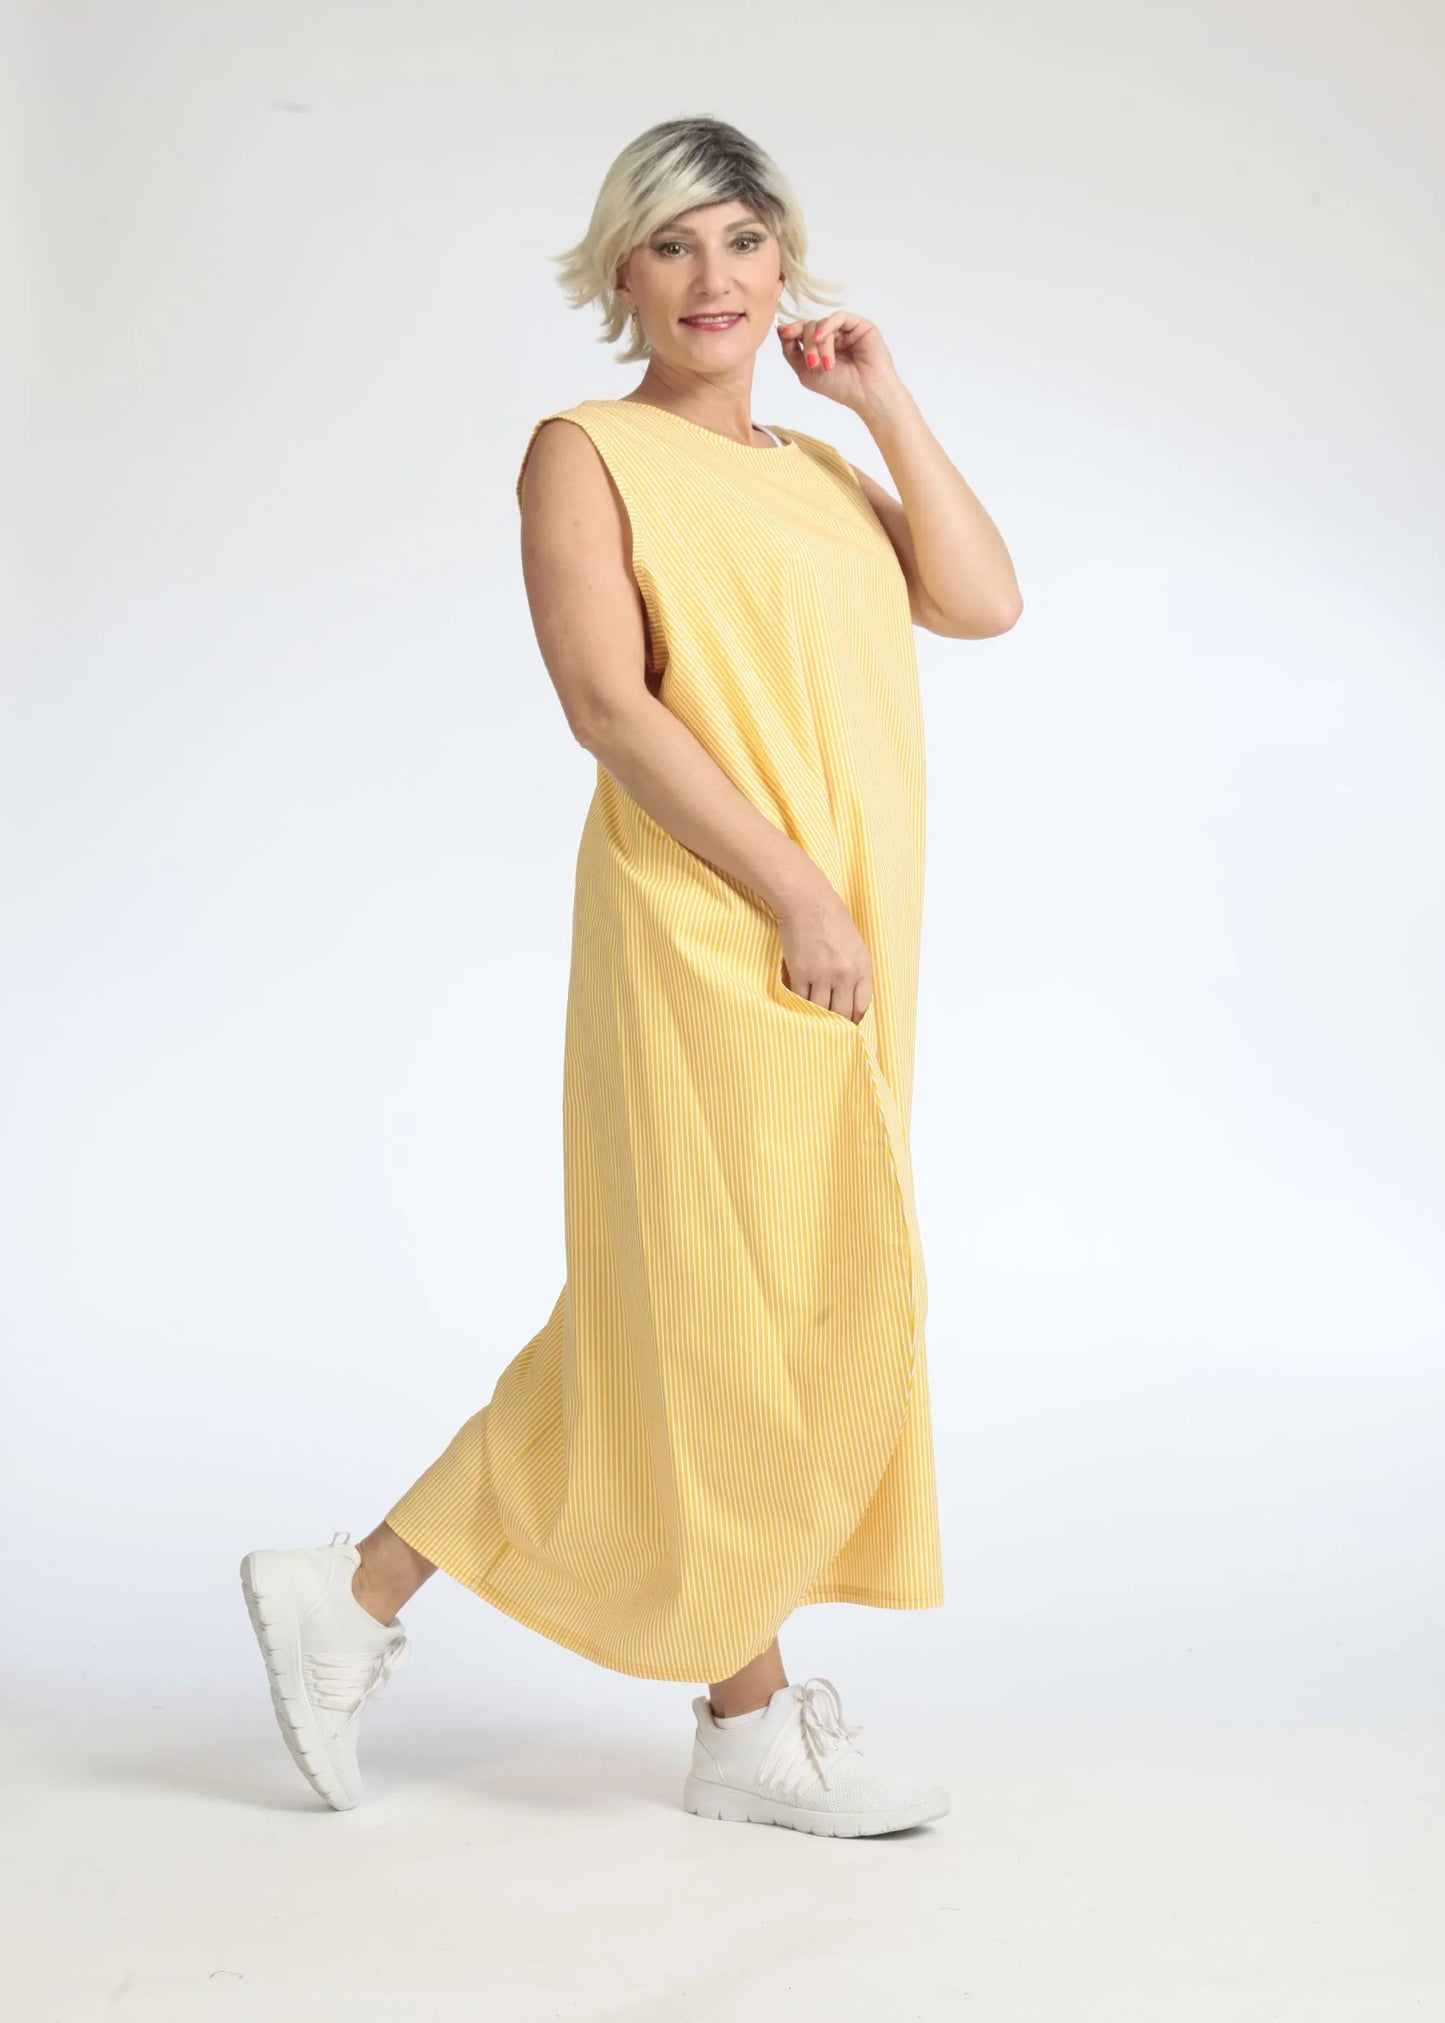 Sommer Kleid in Ballon Form aus glatter Popeline Qualität, Verena in Gelb-Weiß